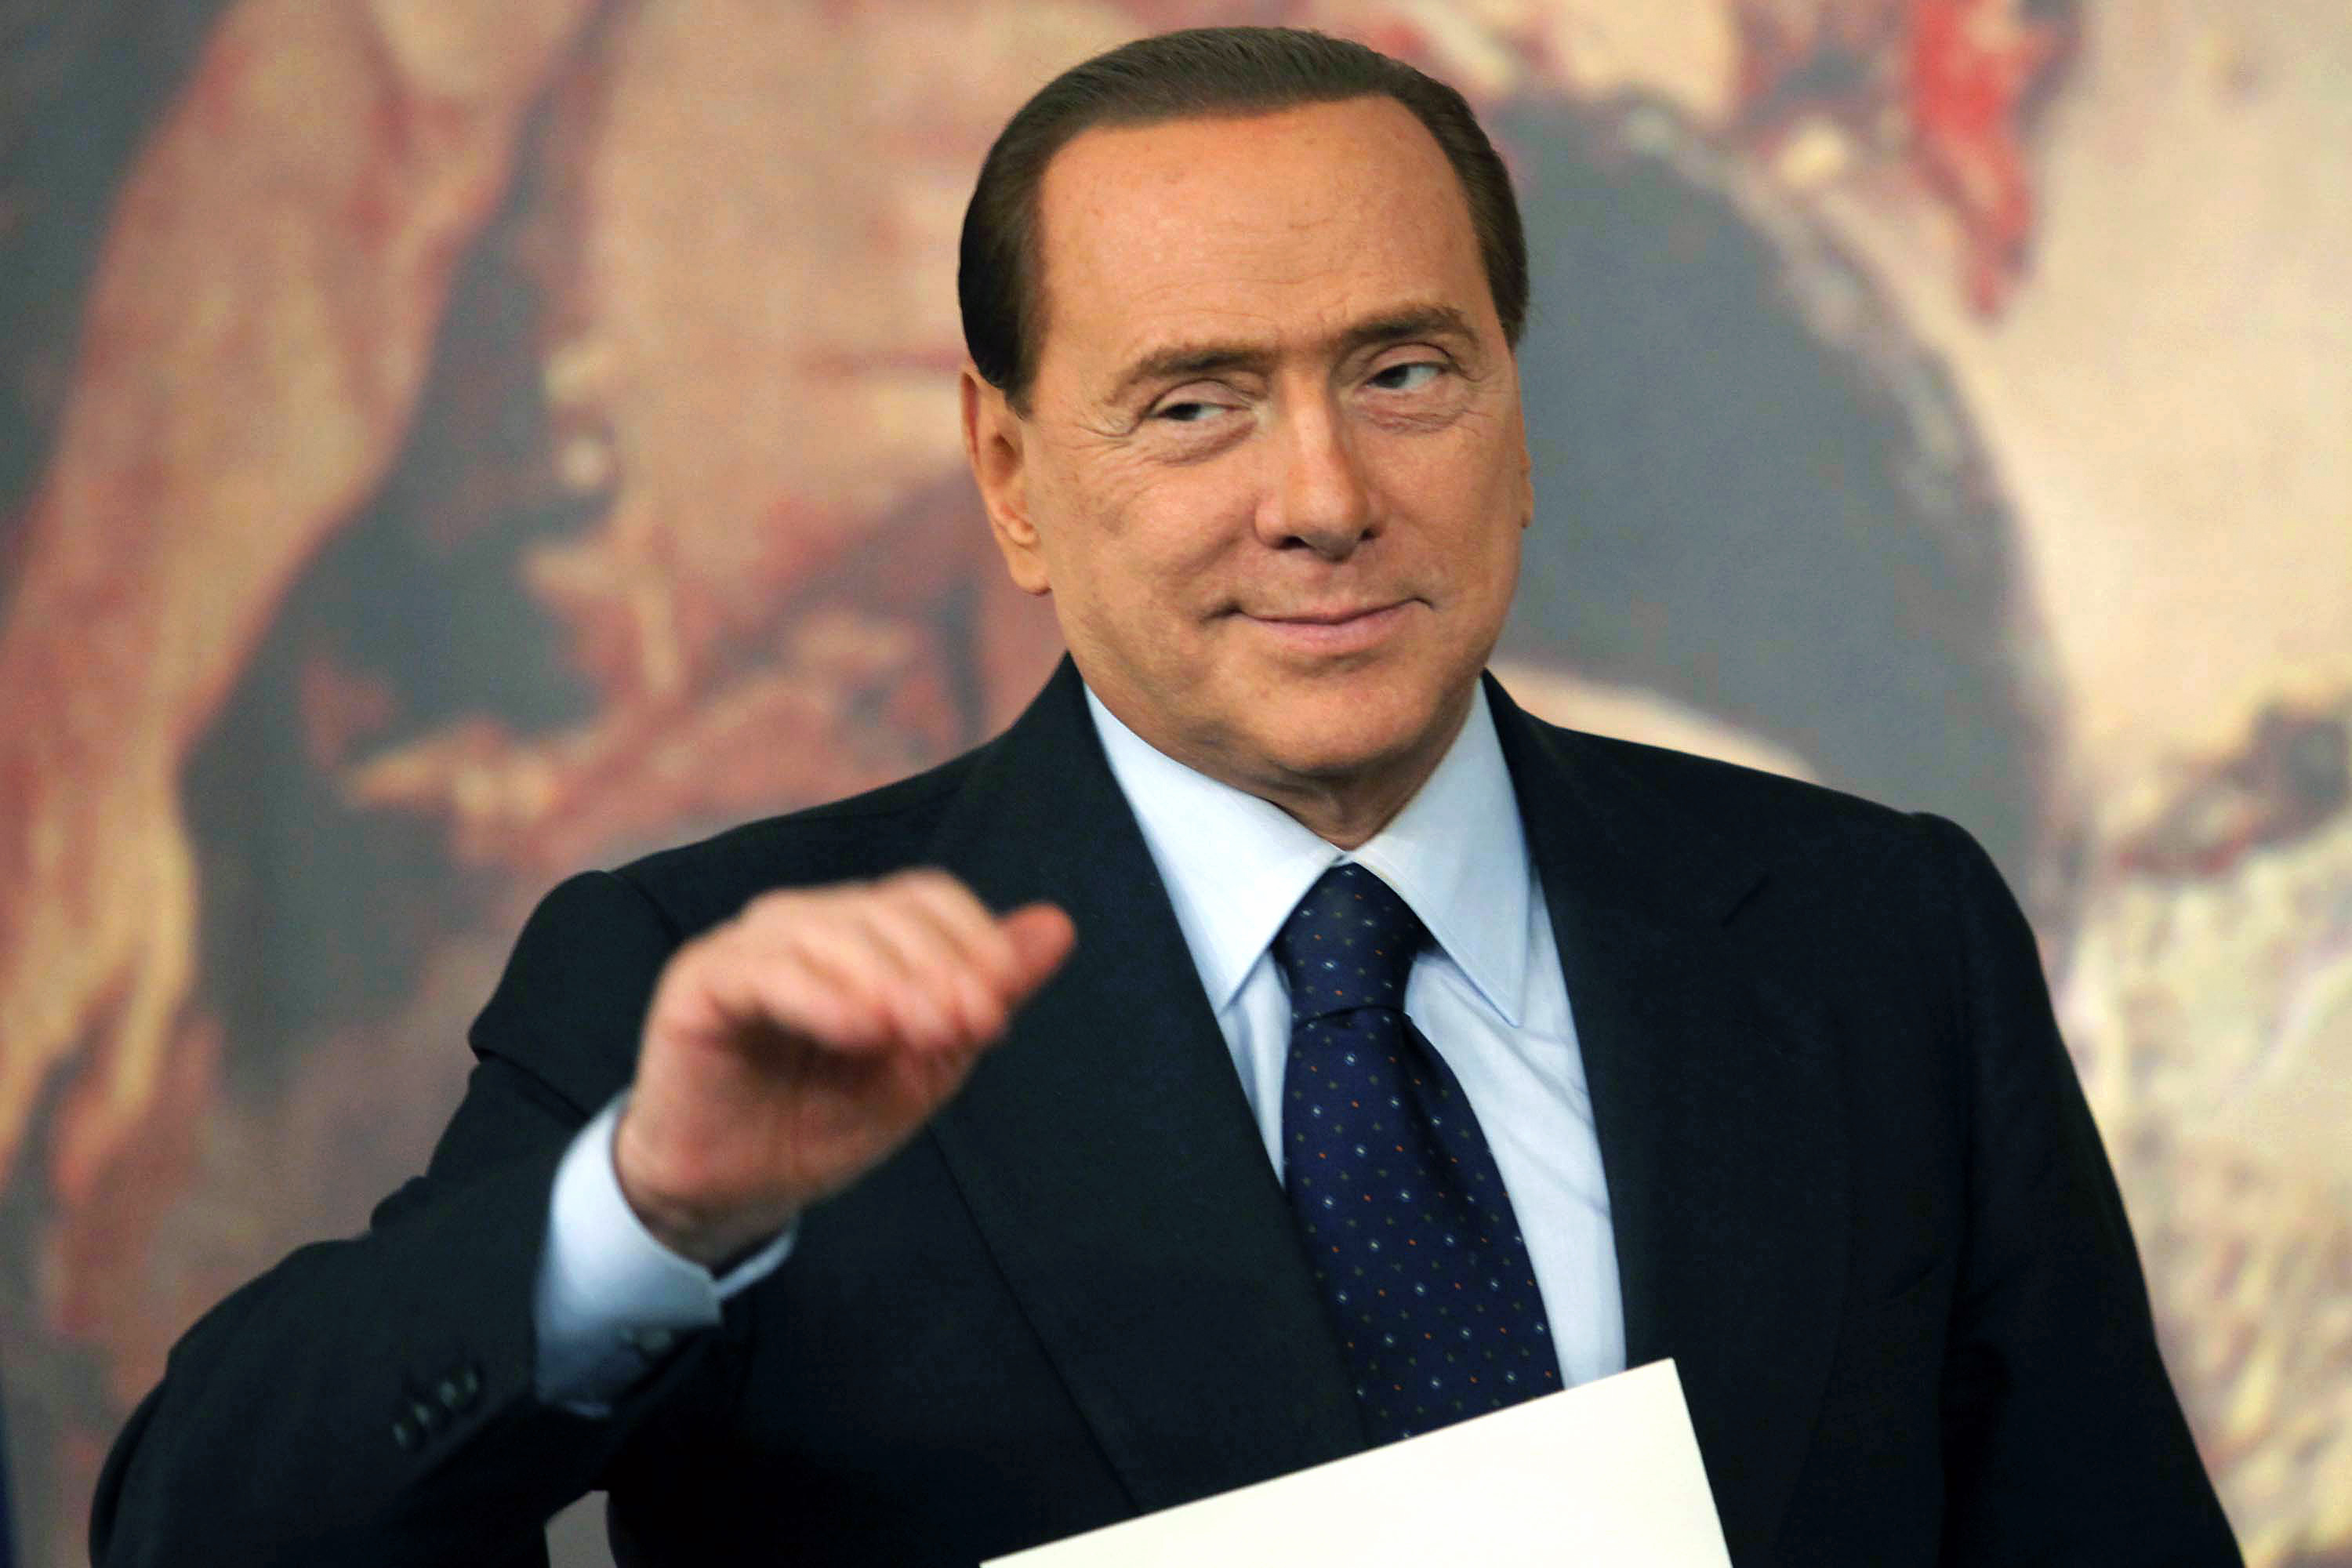 Flicka, Köp av sexuell tjänst, Italien, Berlusconi, Silvio Berlusconi